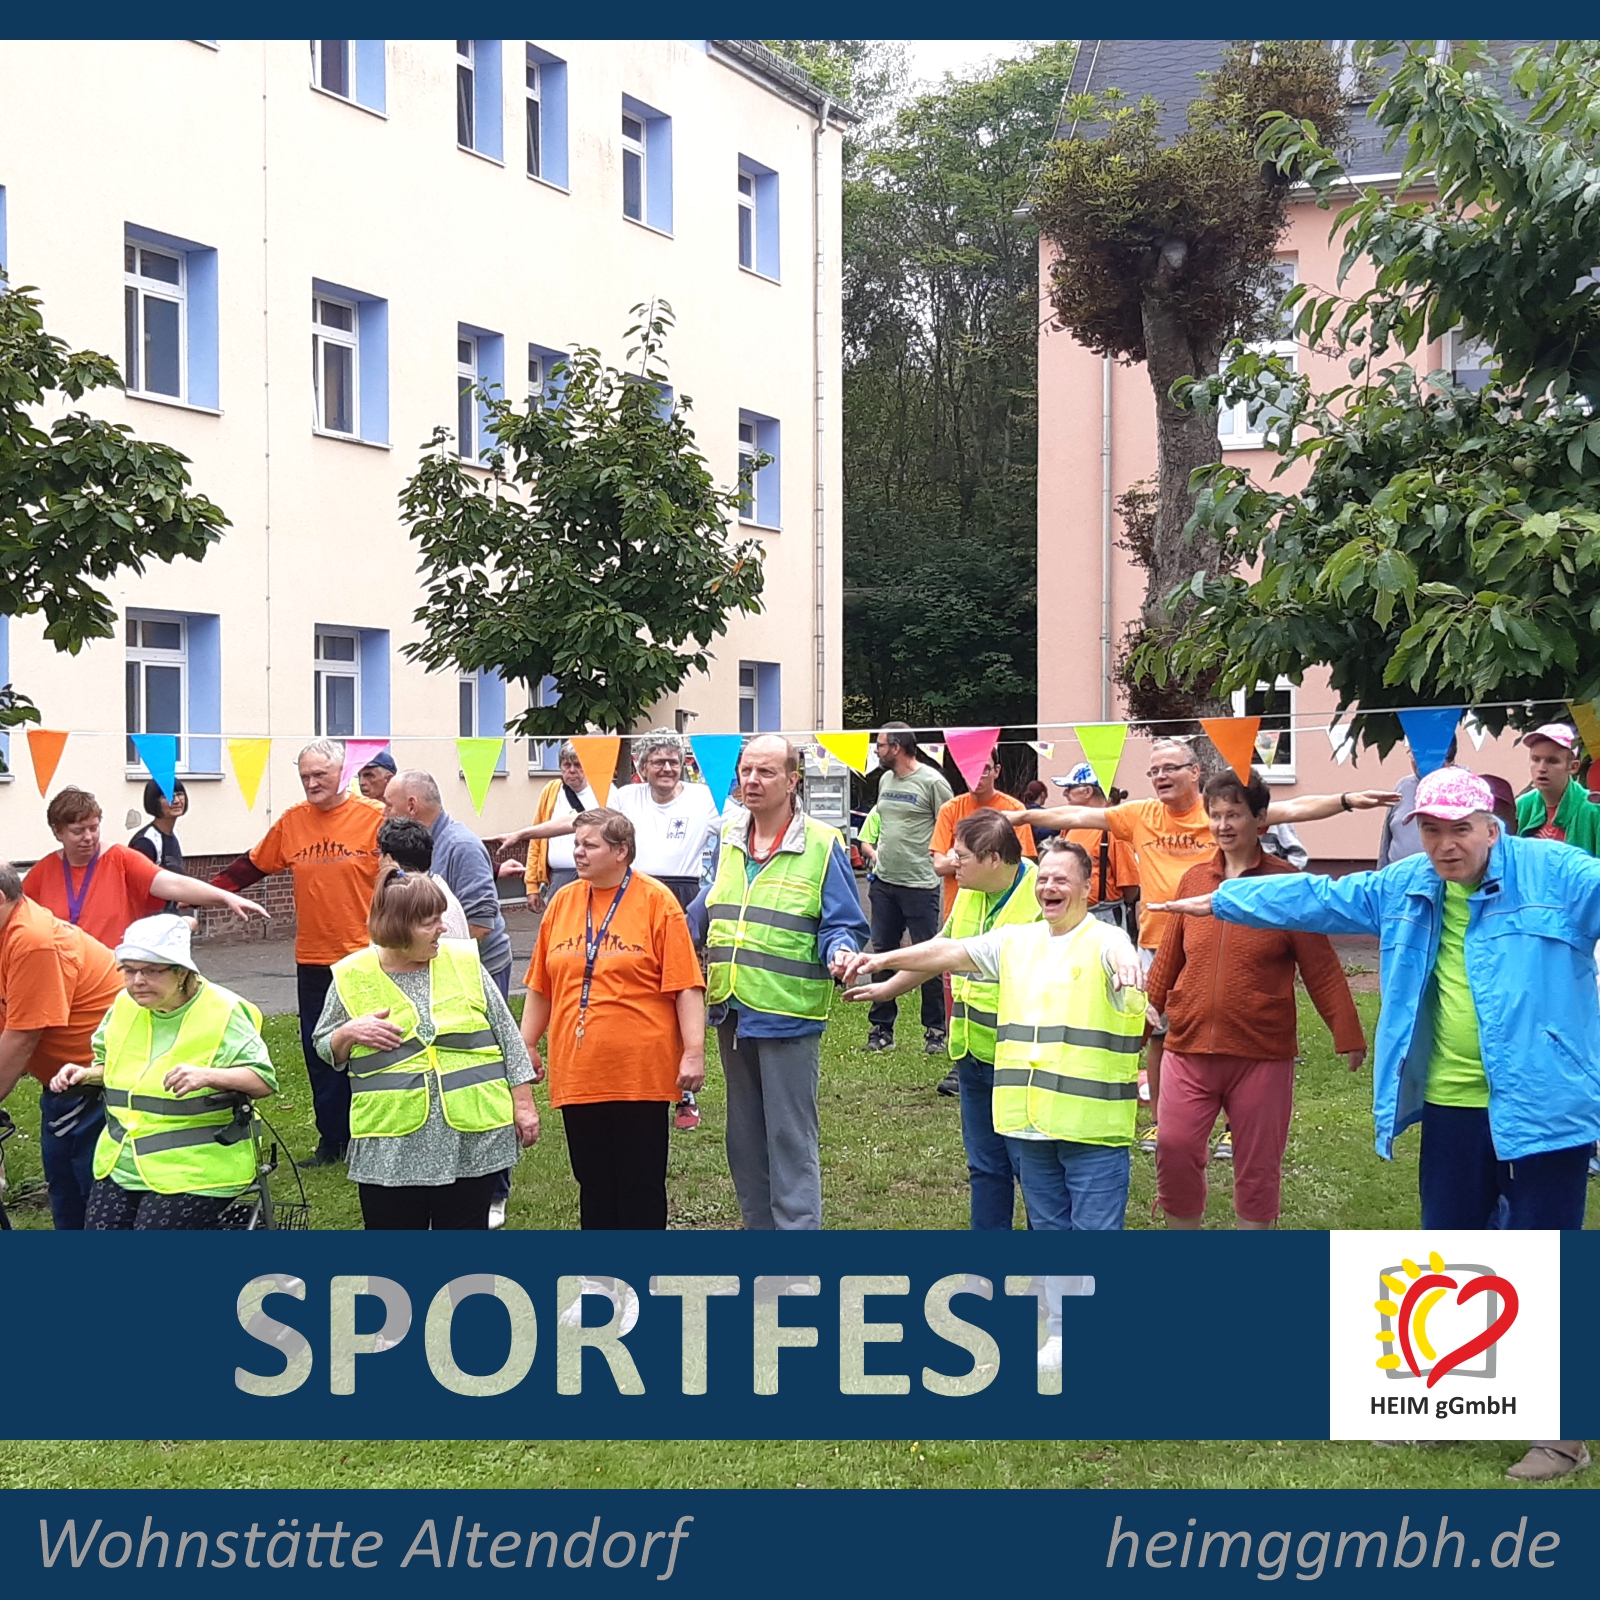 Zur Tradition geworden ist mittlerweile das Altendorfer Sportfest der Heim gemeinnützige GmbH in der Wohnstätte Altendorf.